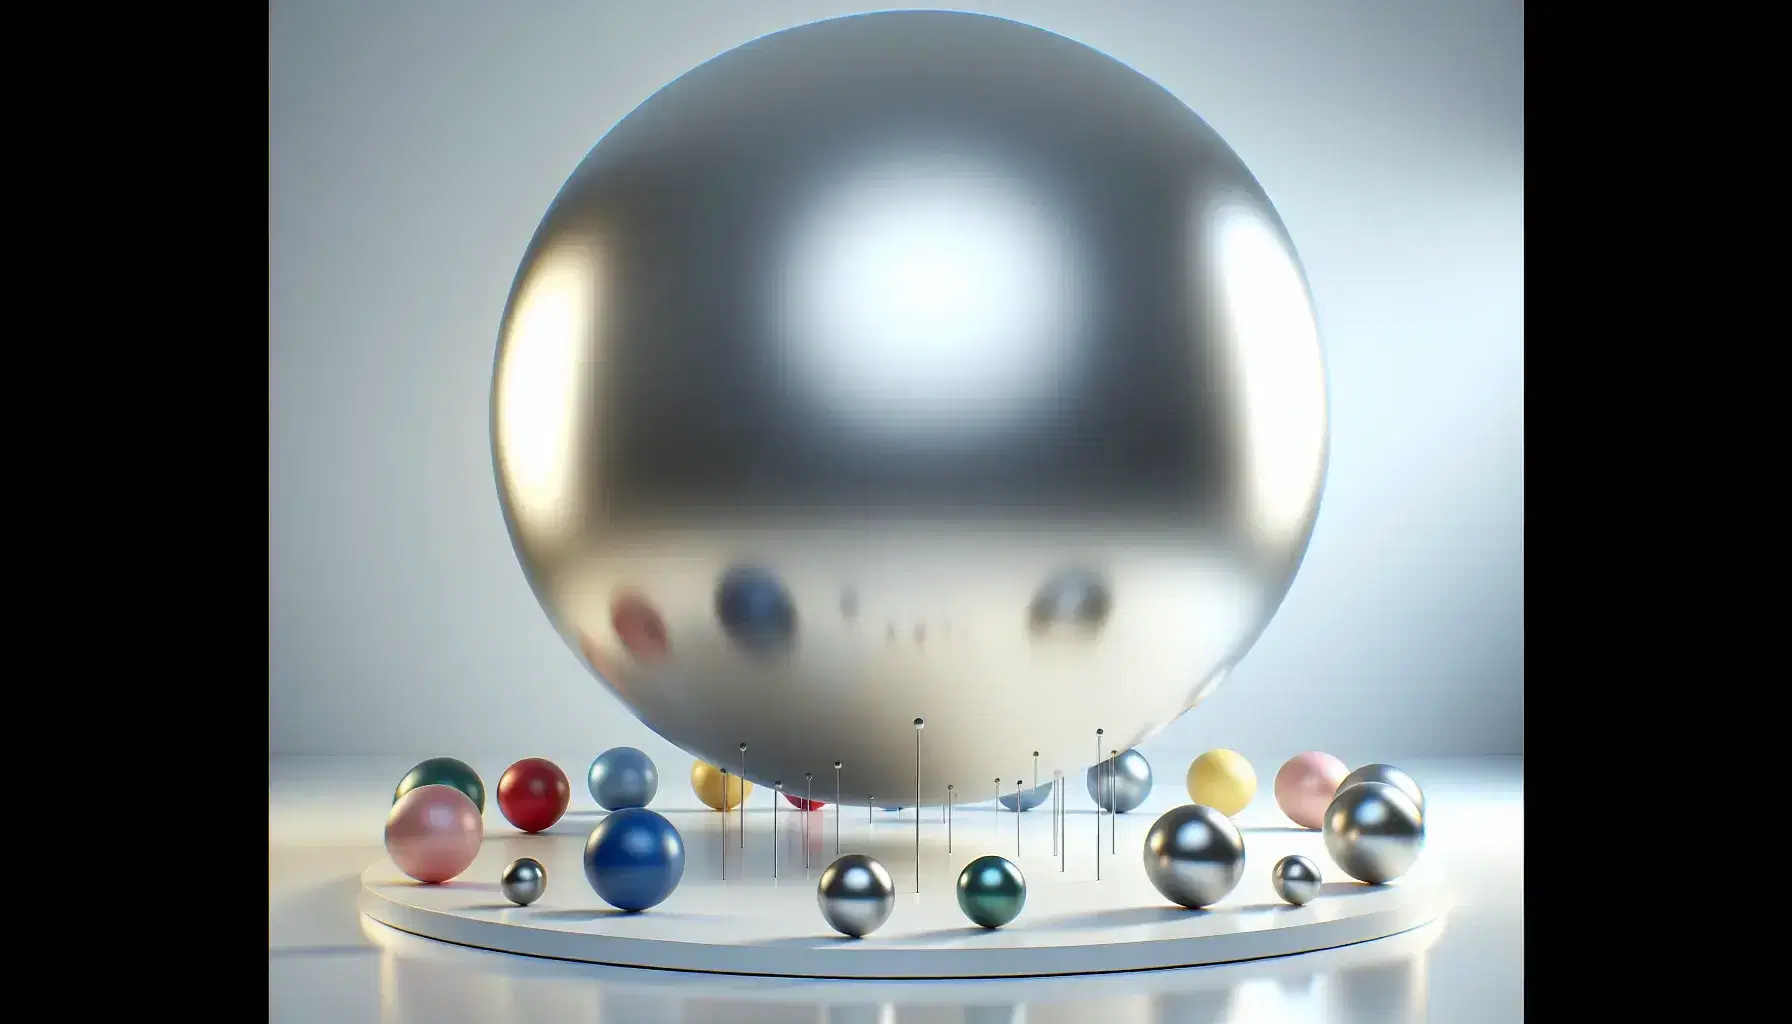 Esfera metálica plateada flotante rodeada de esferas plásticas de colores rojo, azul, verde y amarillo en fondo blanco.